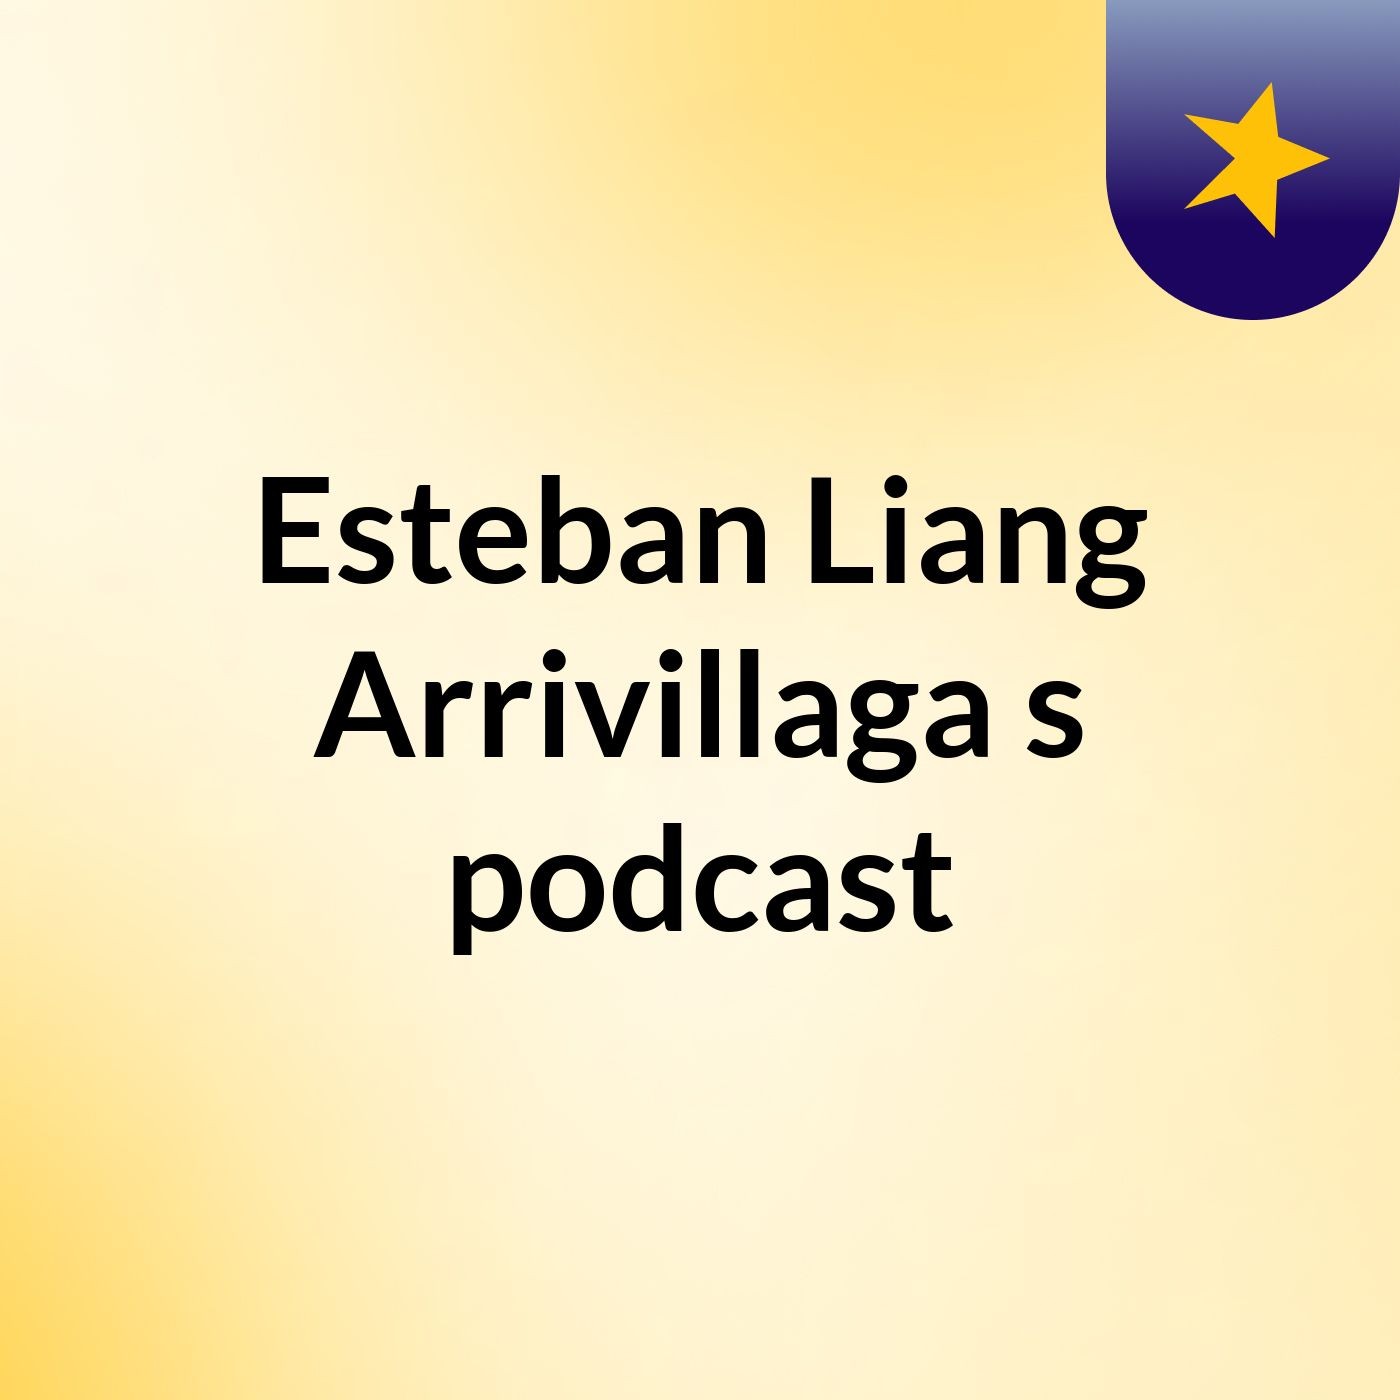 Esteban Liang Arrivillaga's podcast